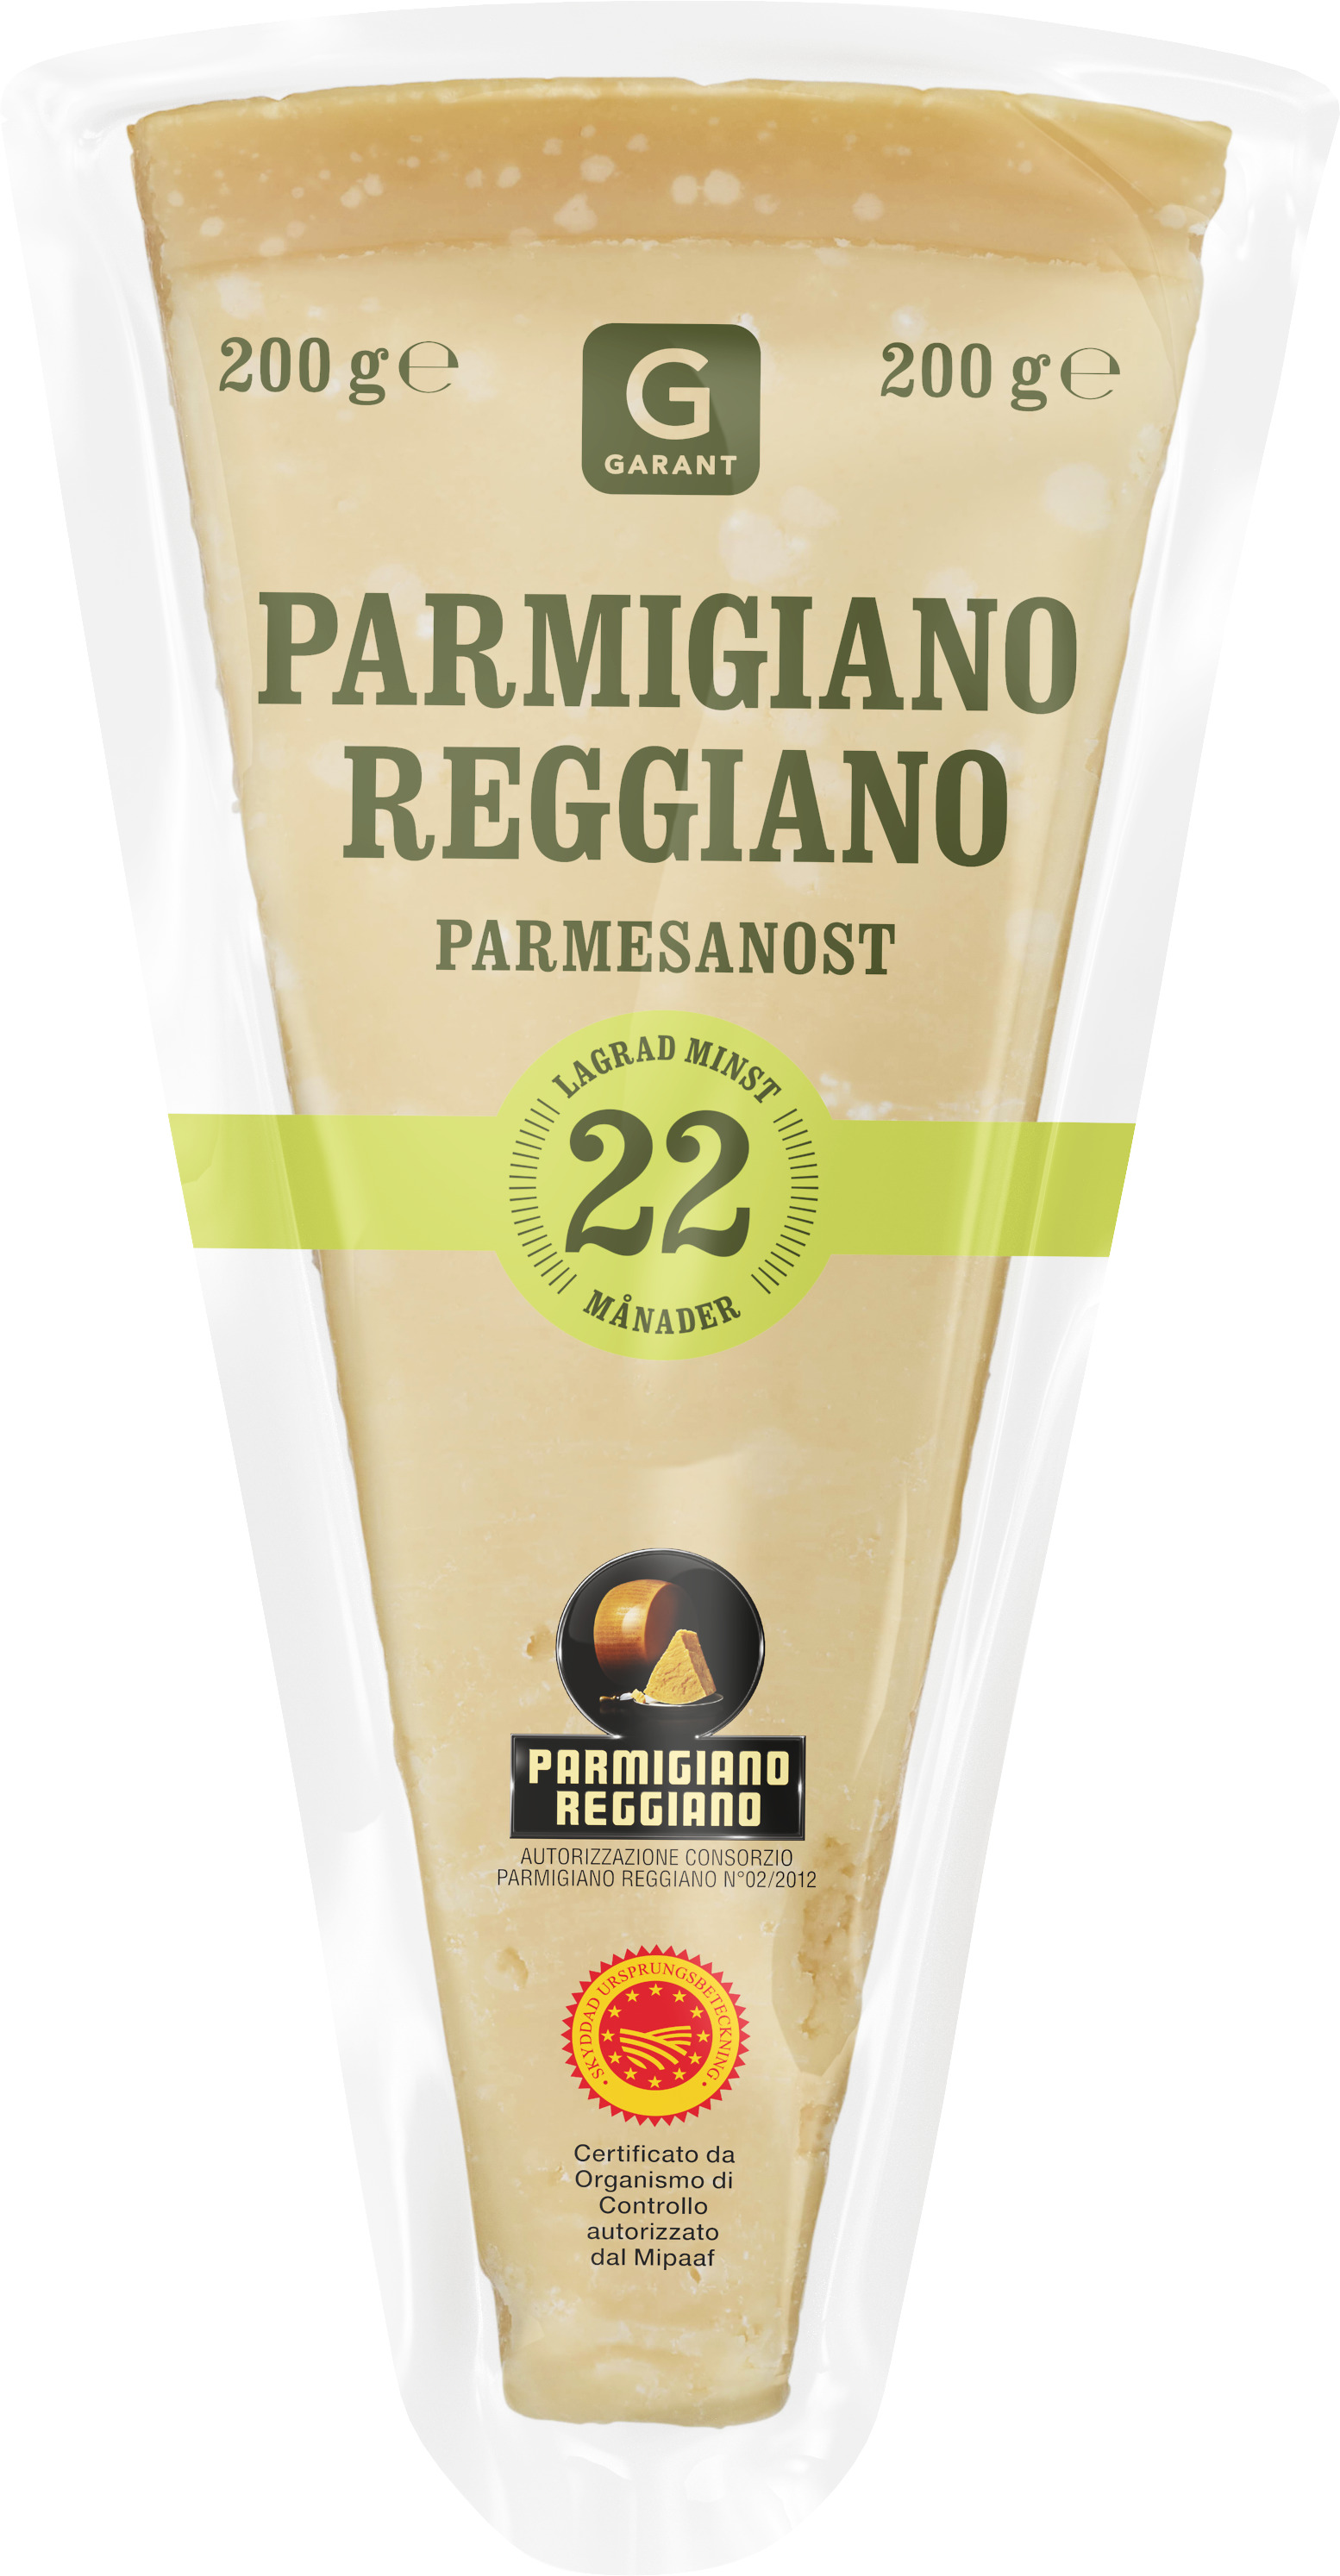 Parmesan 36 månader - Prisvinnande - 300g